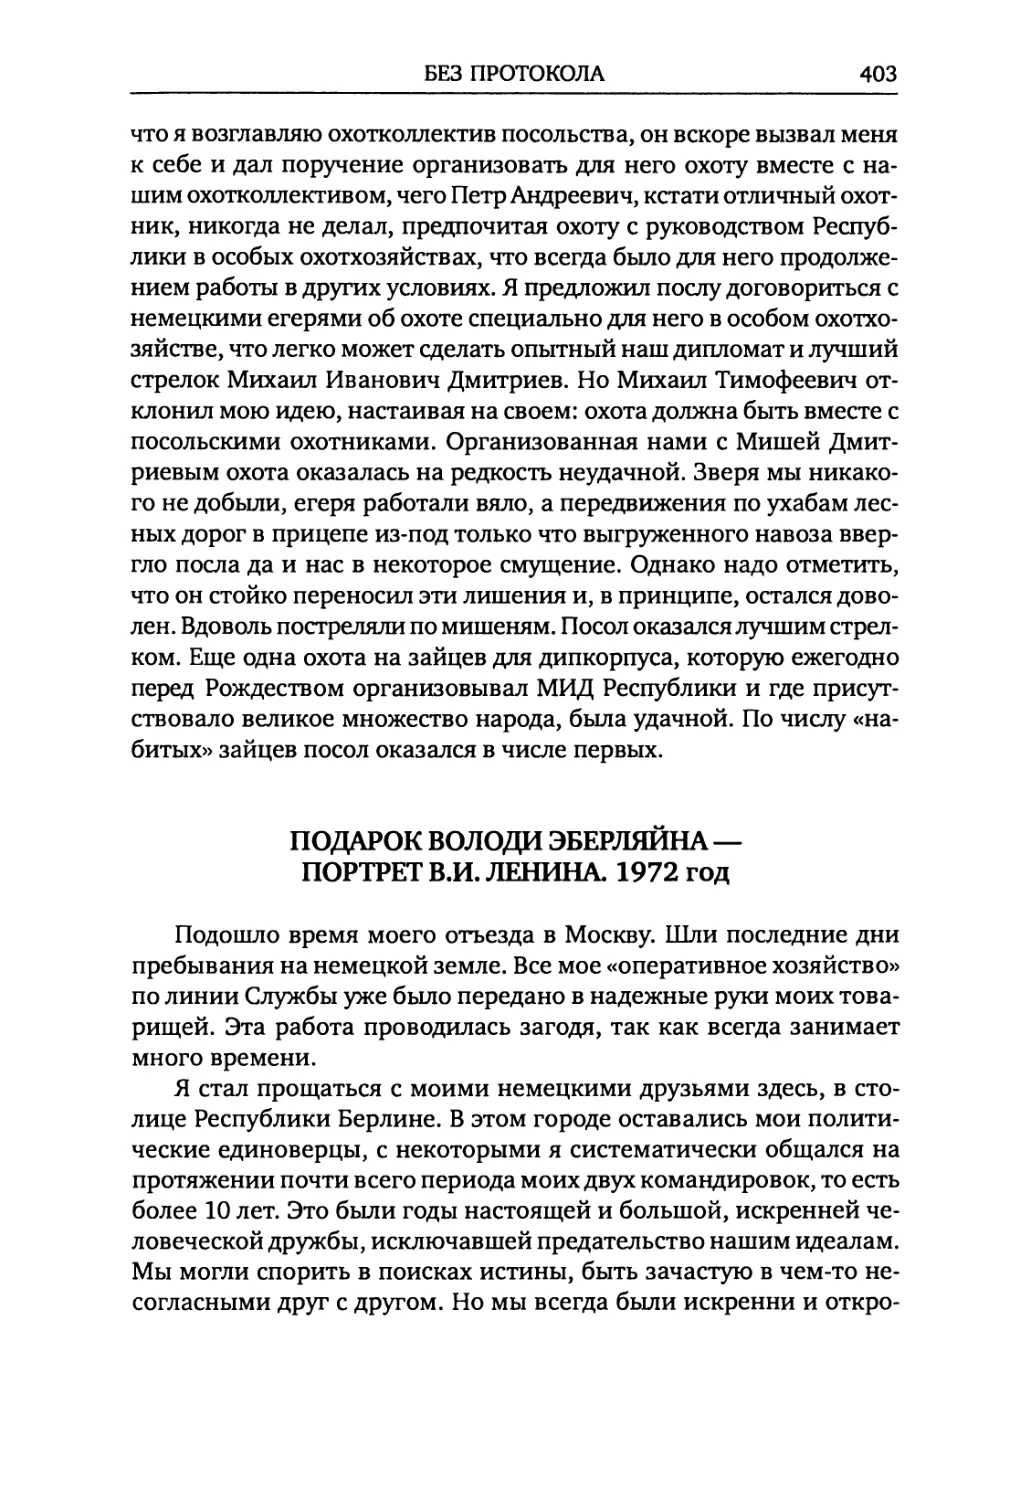 Подарок Володи Эберляйна — Портрет В.И. Ленина. 1972 год